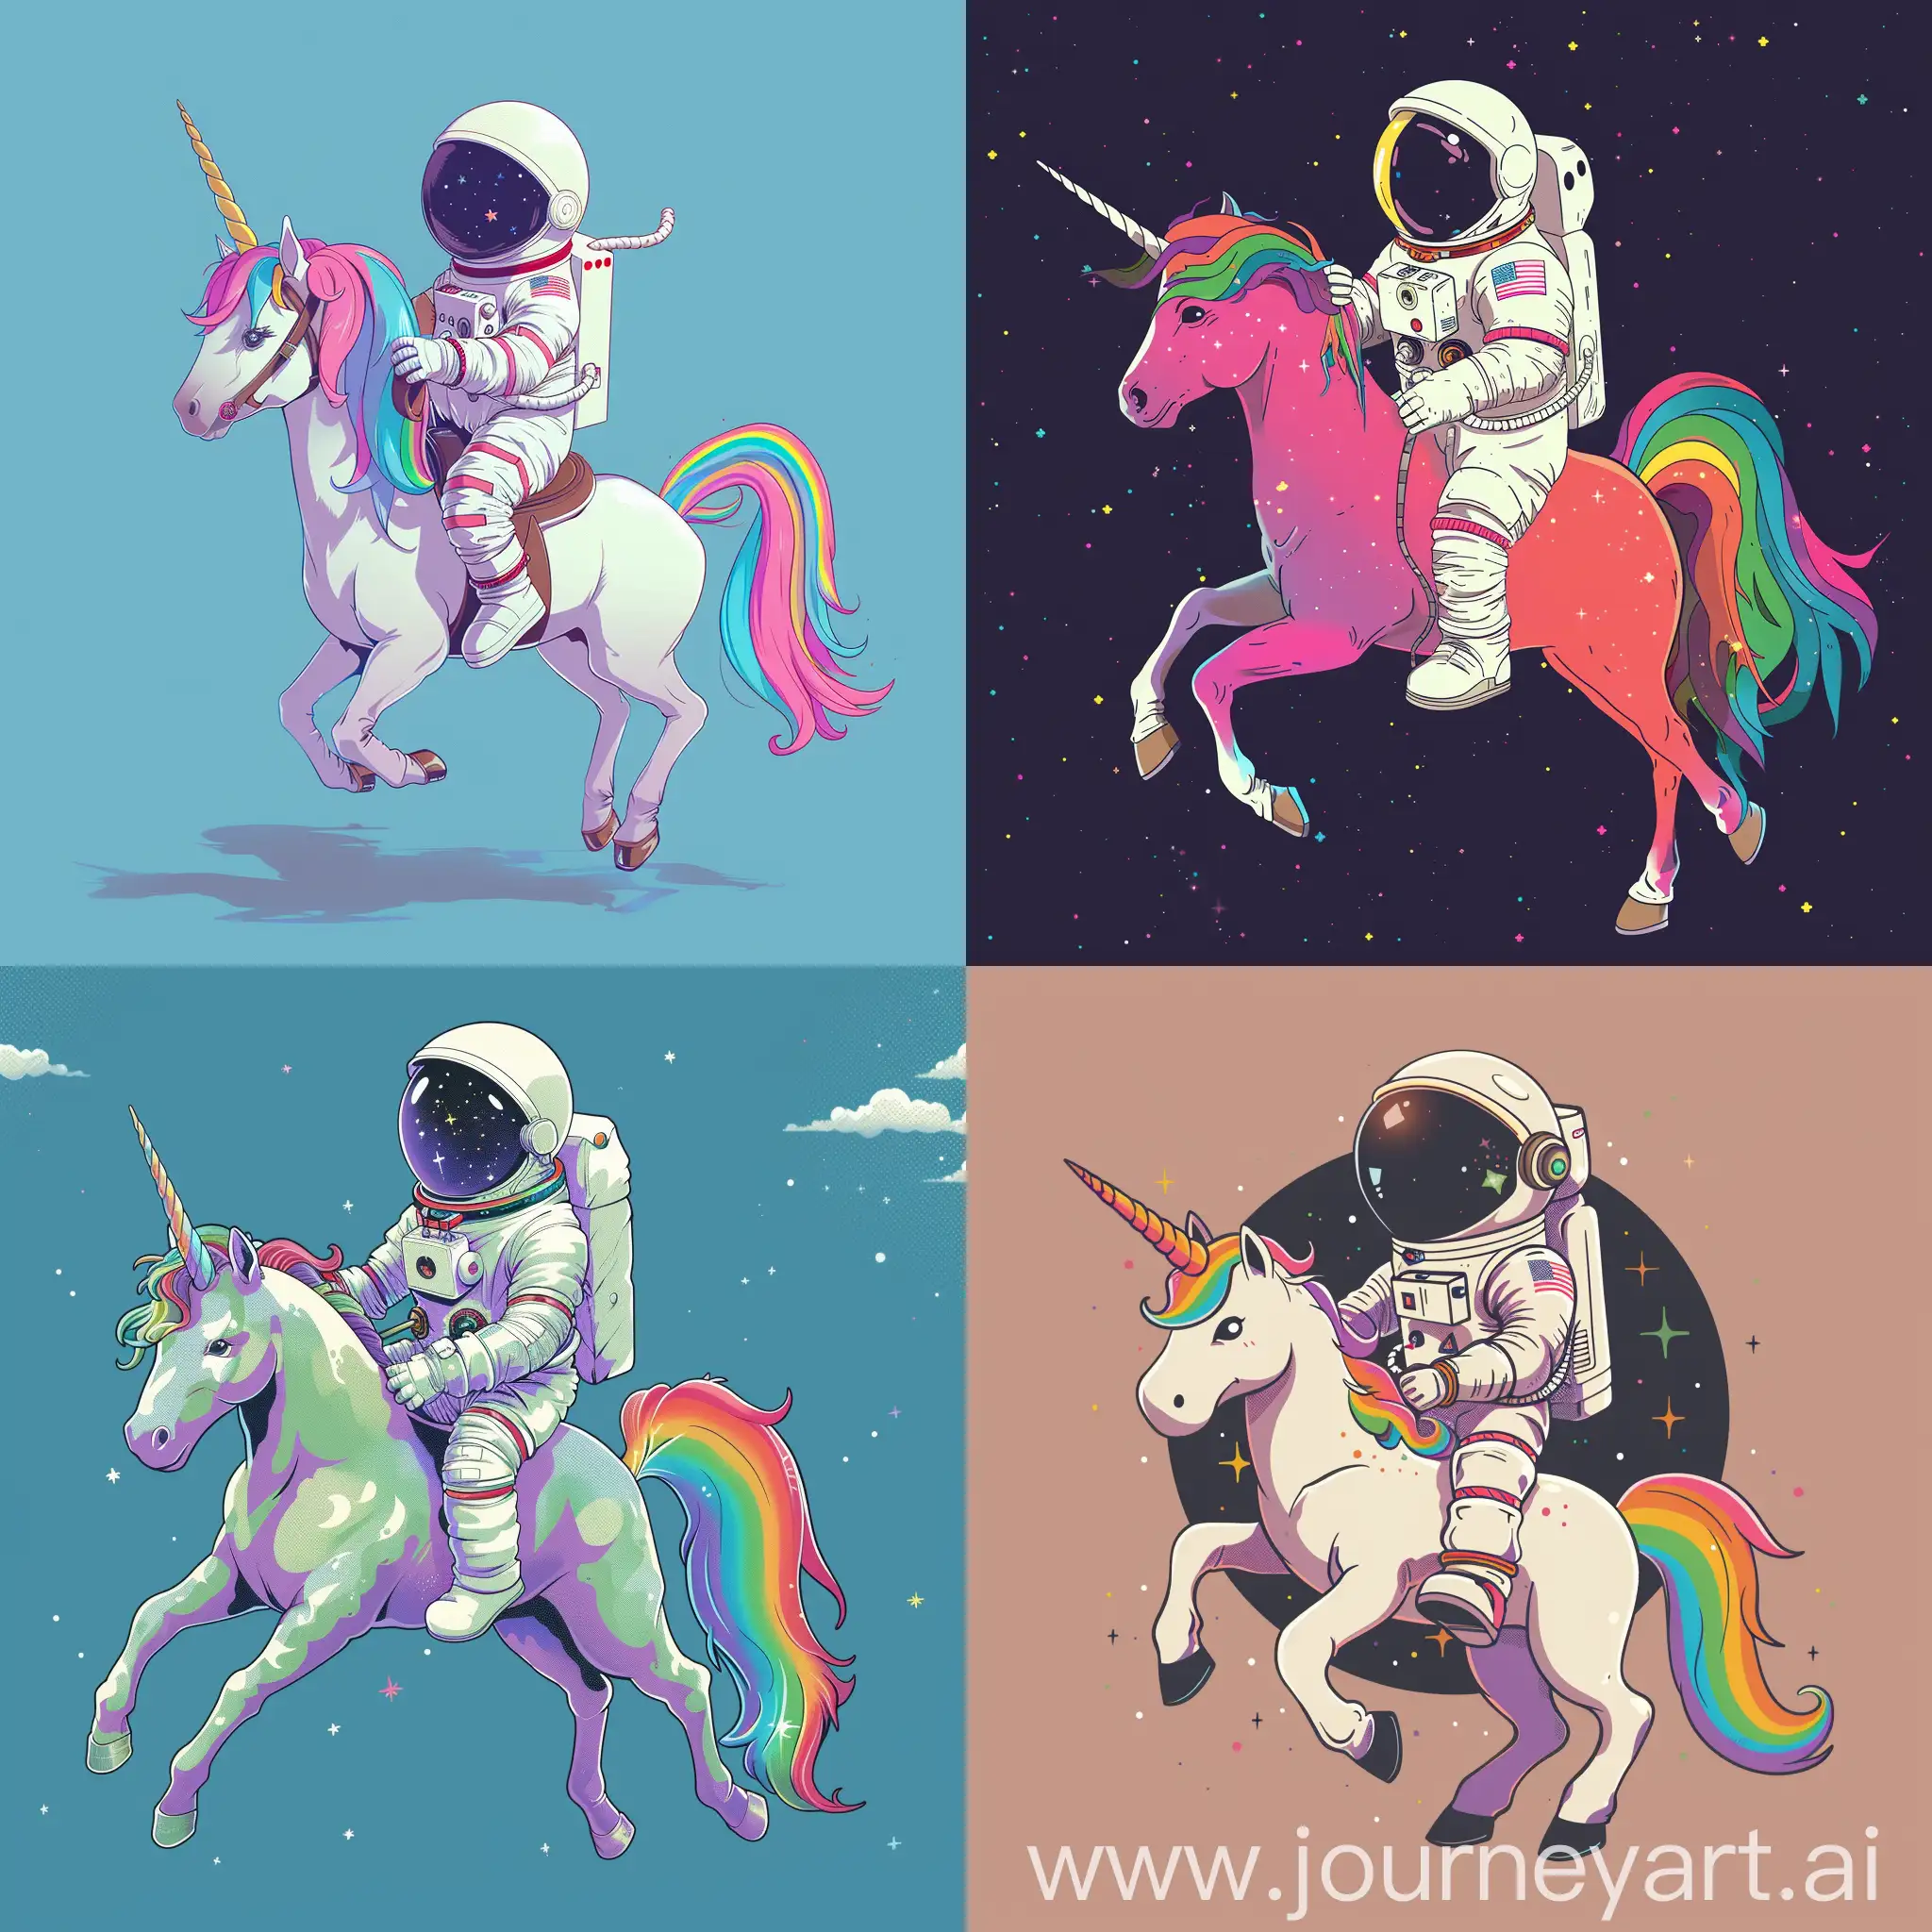 An astronaut riding a rainbow unicorn, ghibli style